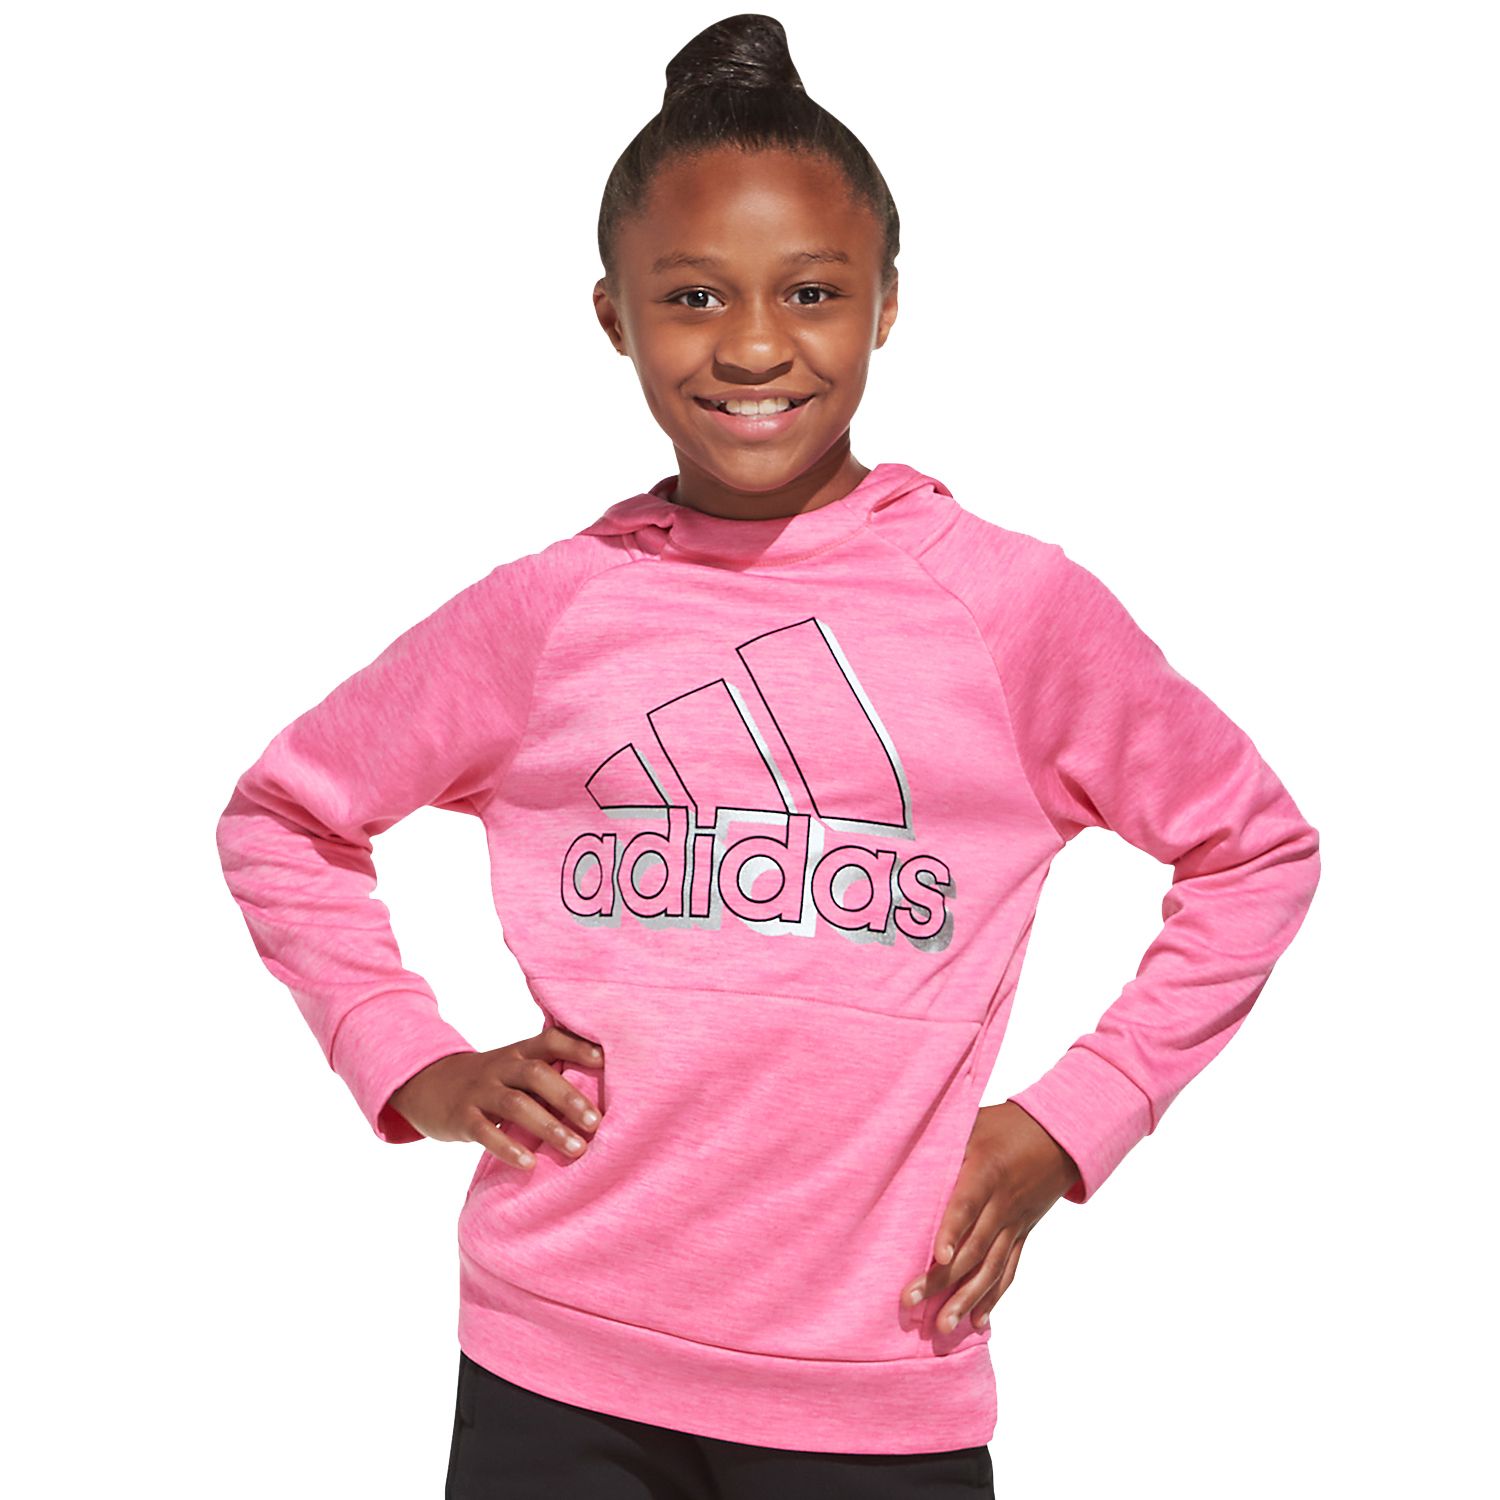 adidas hoodie girl pink